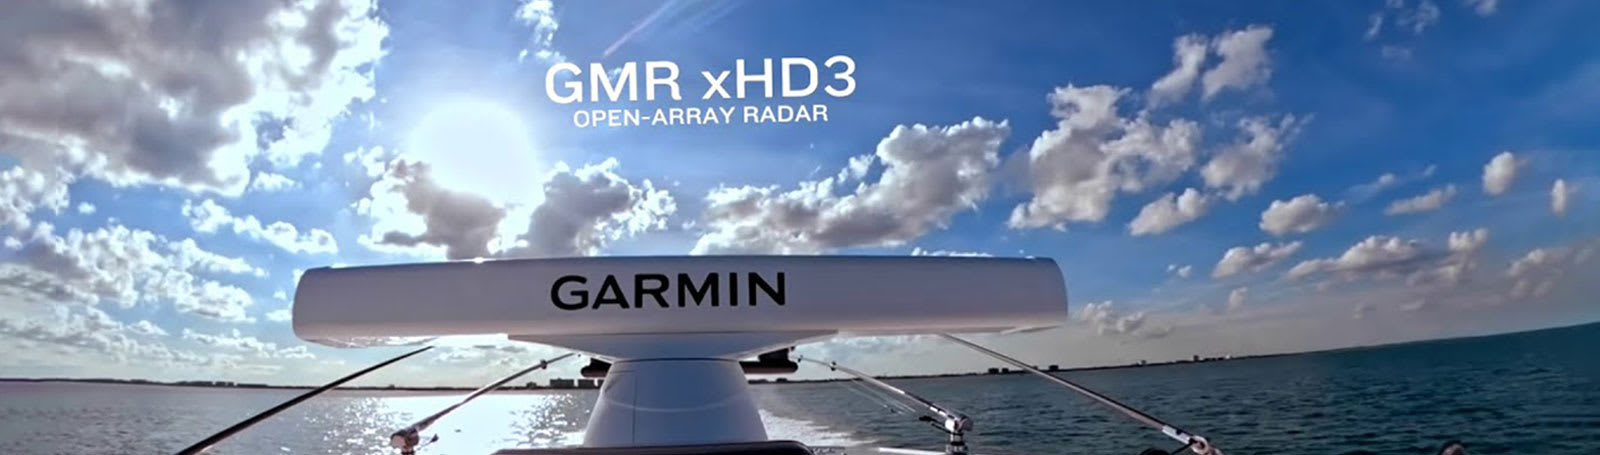 Radar GARMIN GMR xHD3 Åpen msokkel 4ft6ft 41225kW 7296nm 2448RPM K100001224G